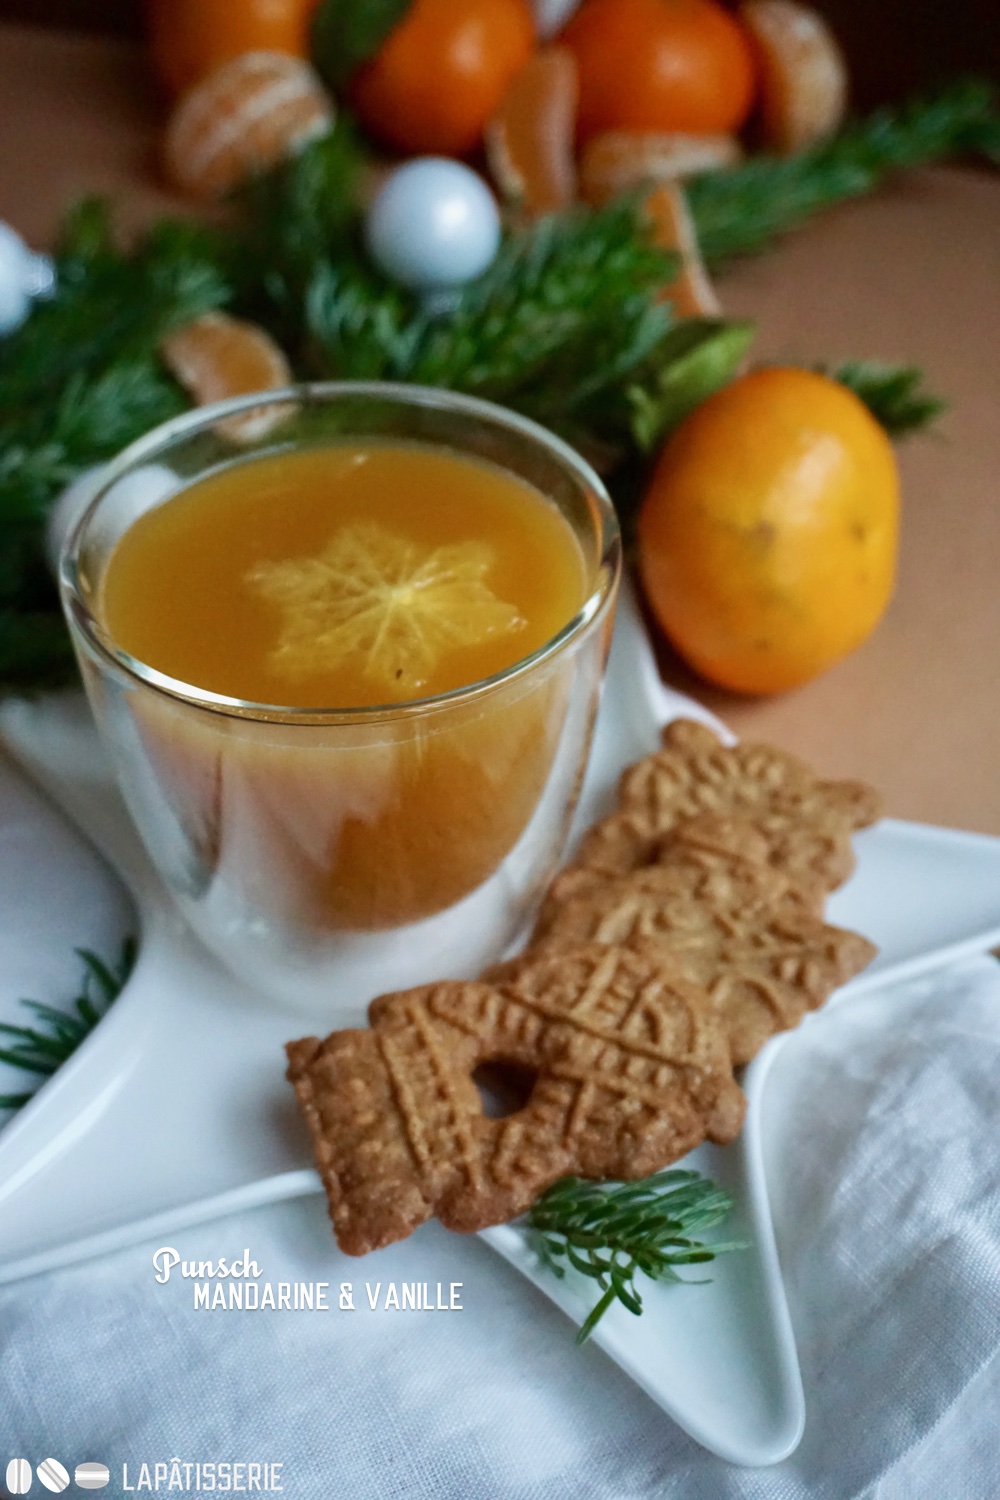 So ein wärmender Punsch mit Mandarine und Vanille ist schon was Feines in der Weihnachtszeit.